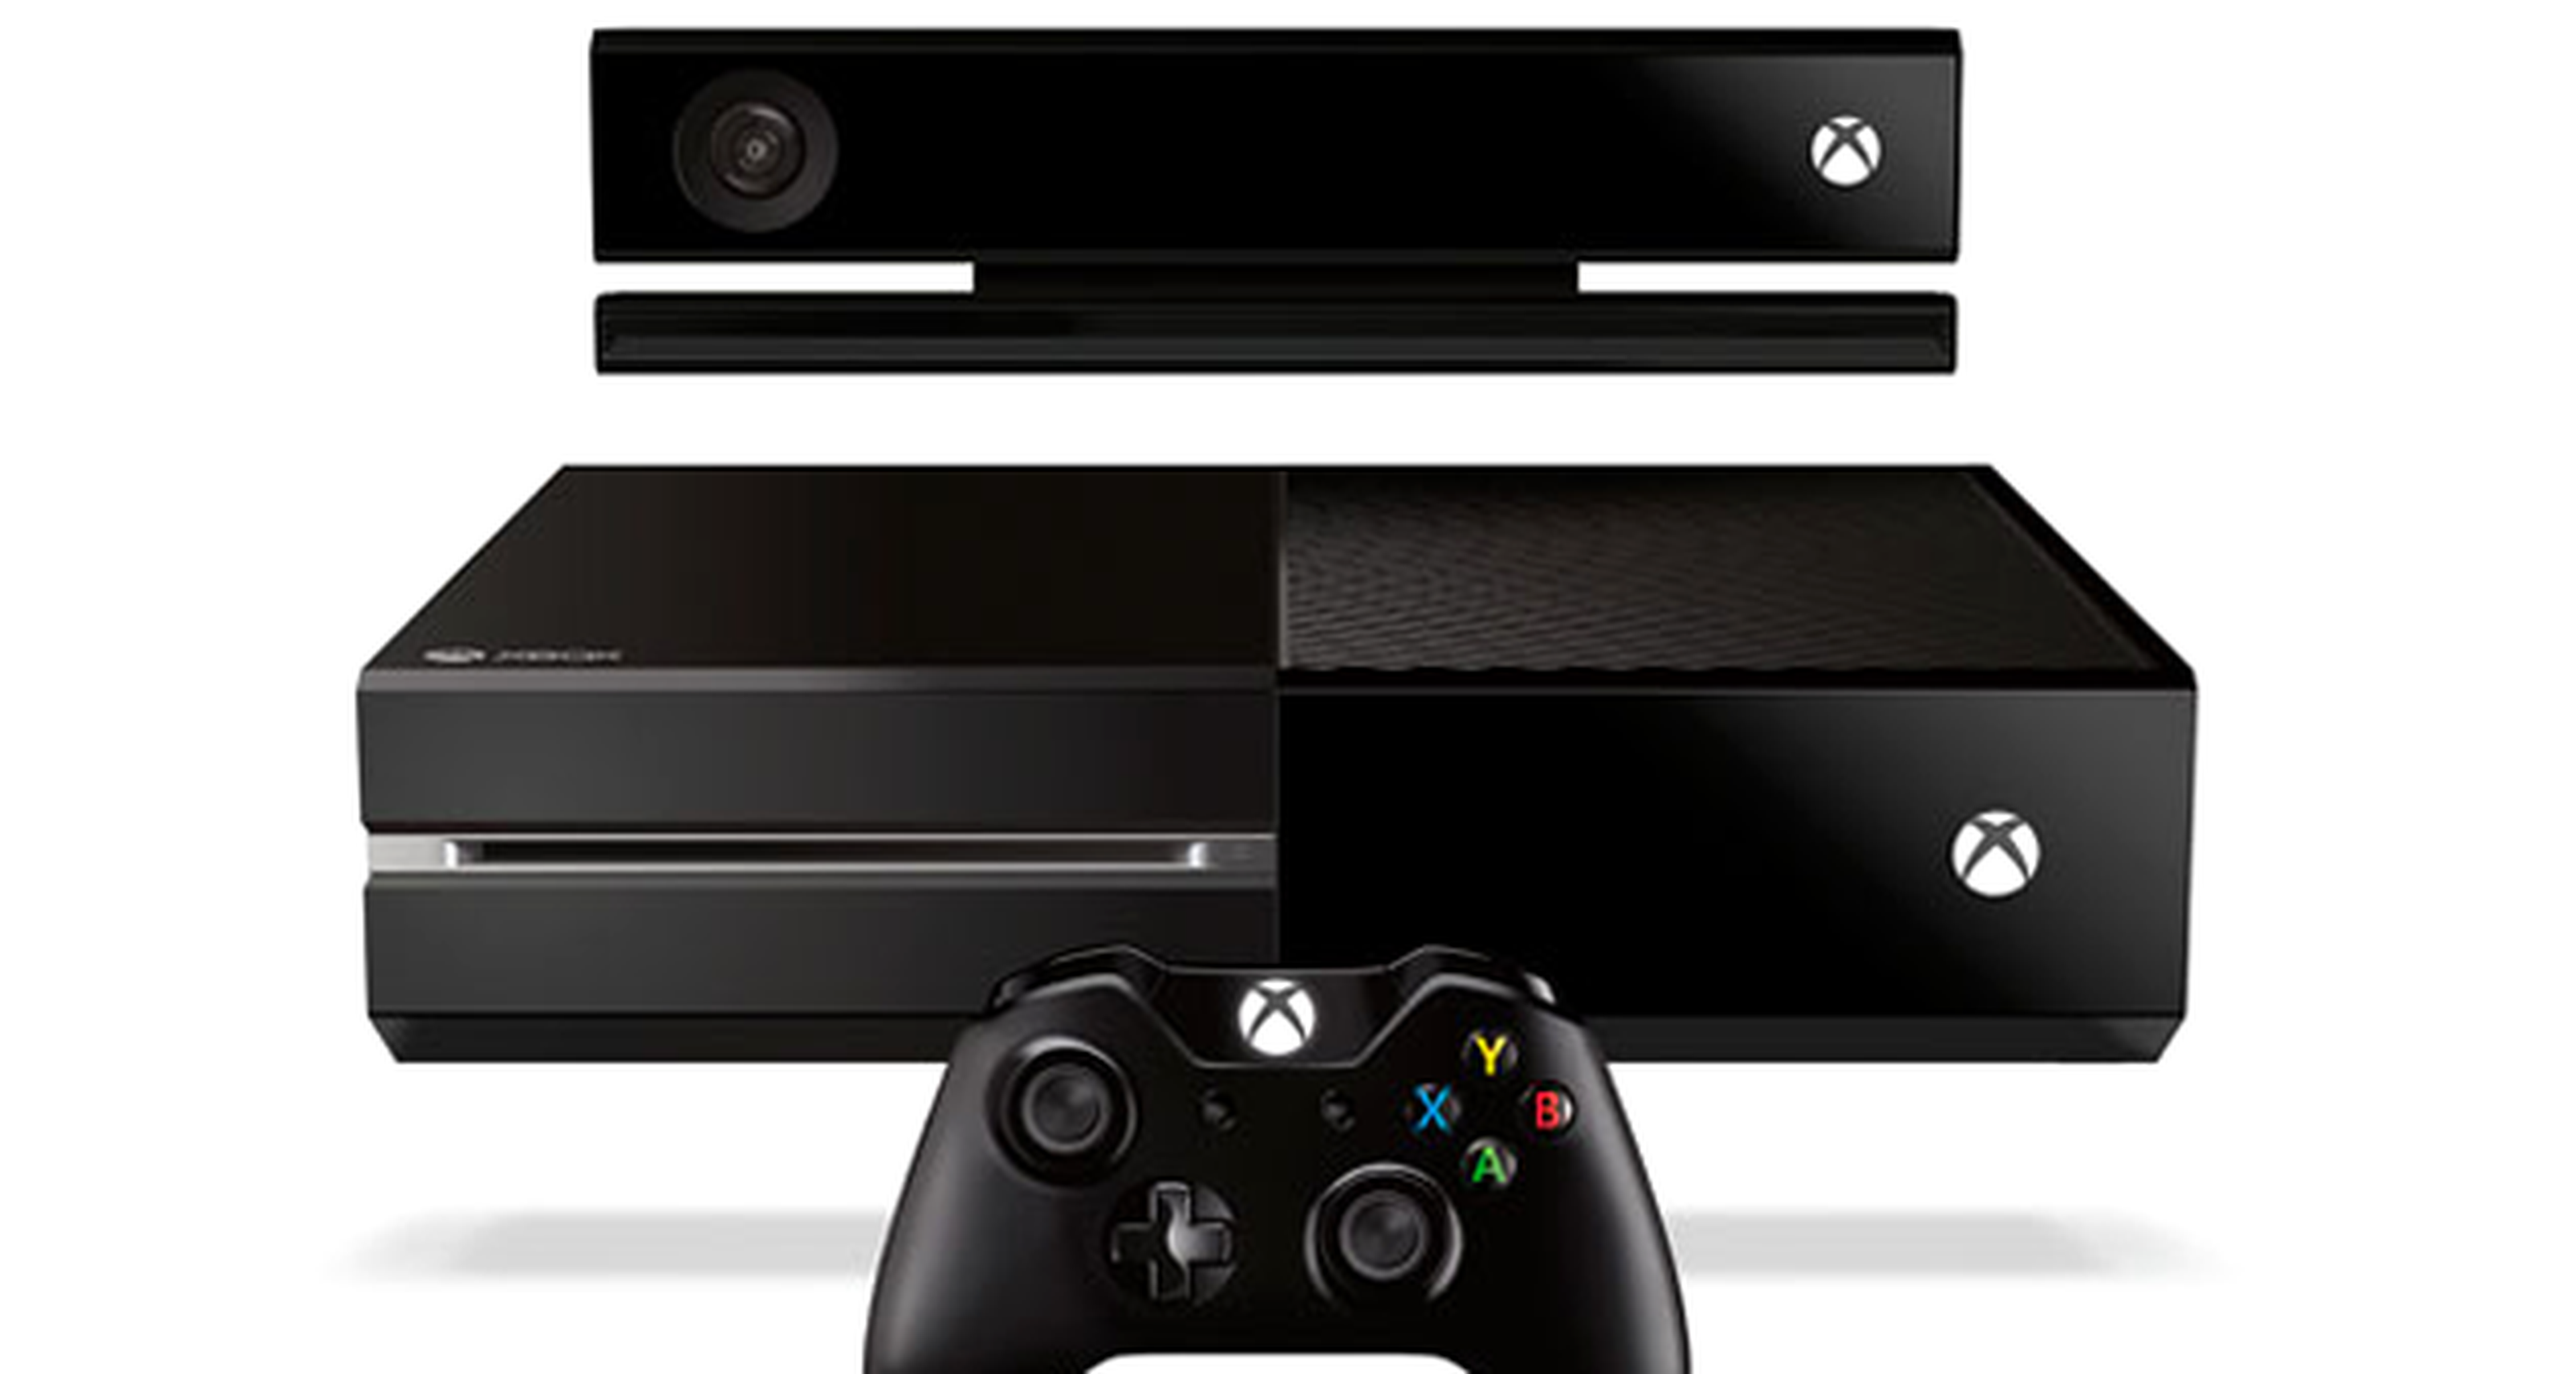 Resultados de encuesta: La rebaja de Xbox One sin Kinect no os ha convencido